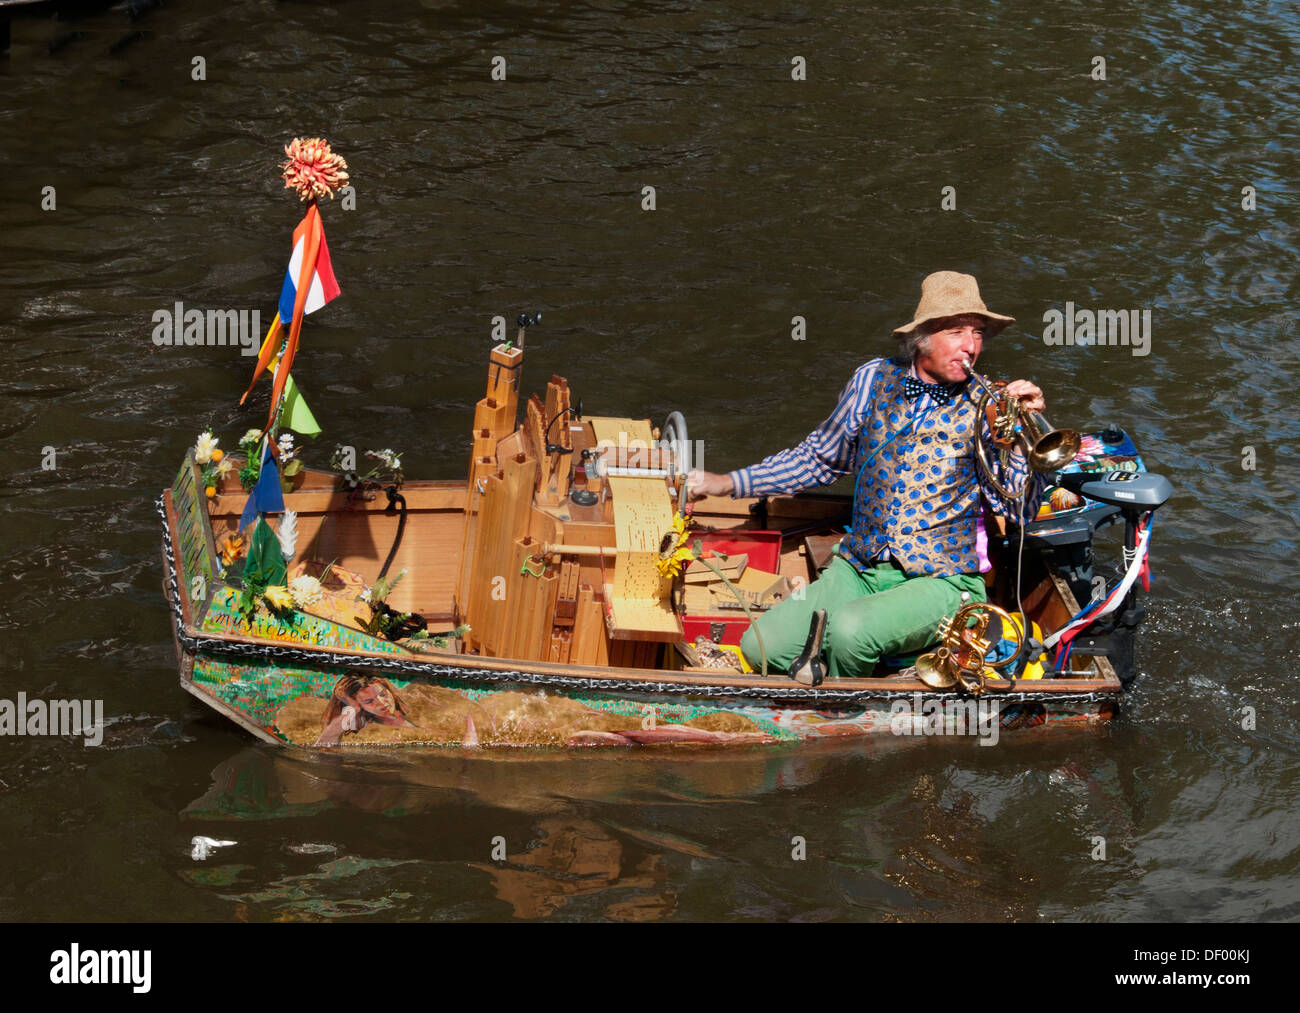 Un musicien ambulant ( Reinier Sijpkens ) à jouer de la trompette dans un organe bateau sur un canal à Amsterdam Pays-Bas Banque D'Images